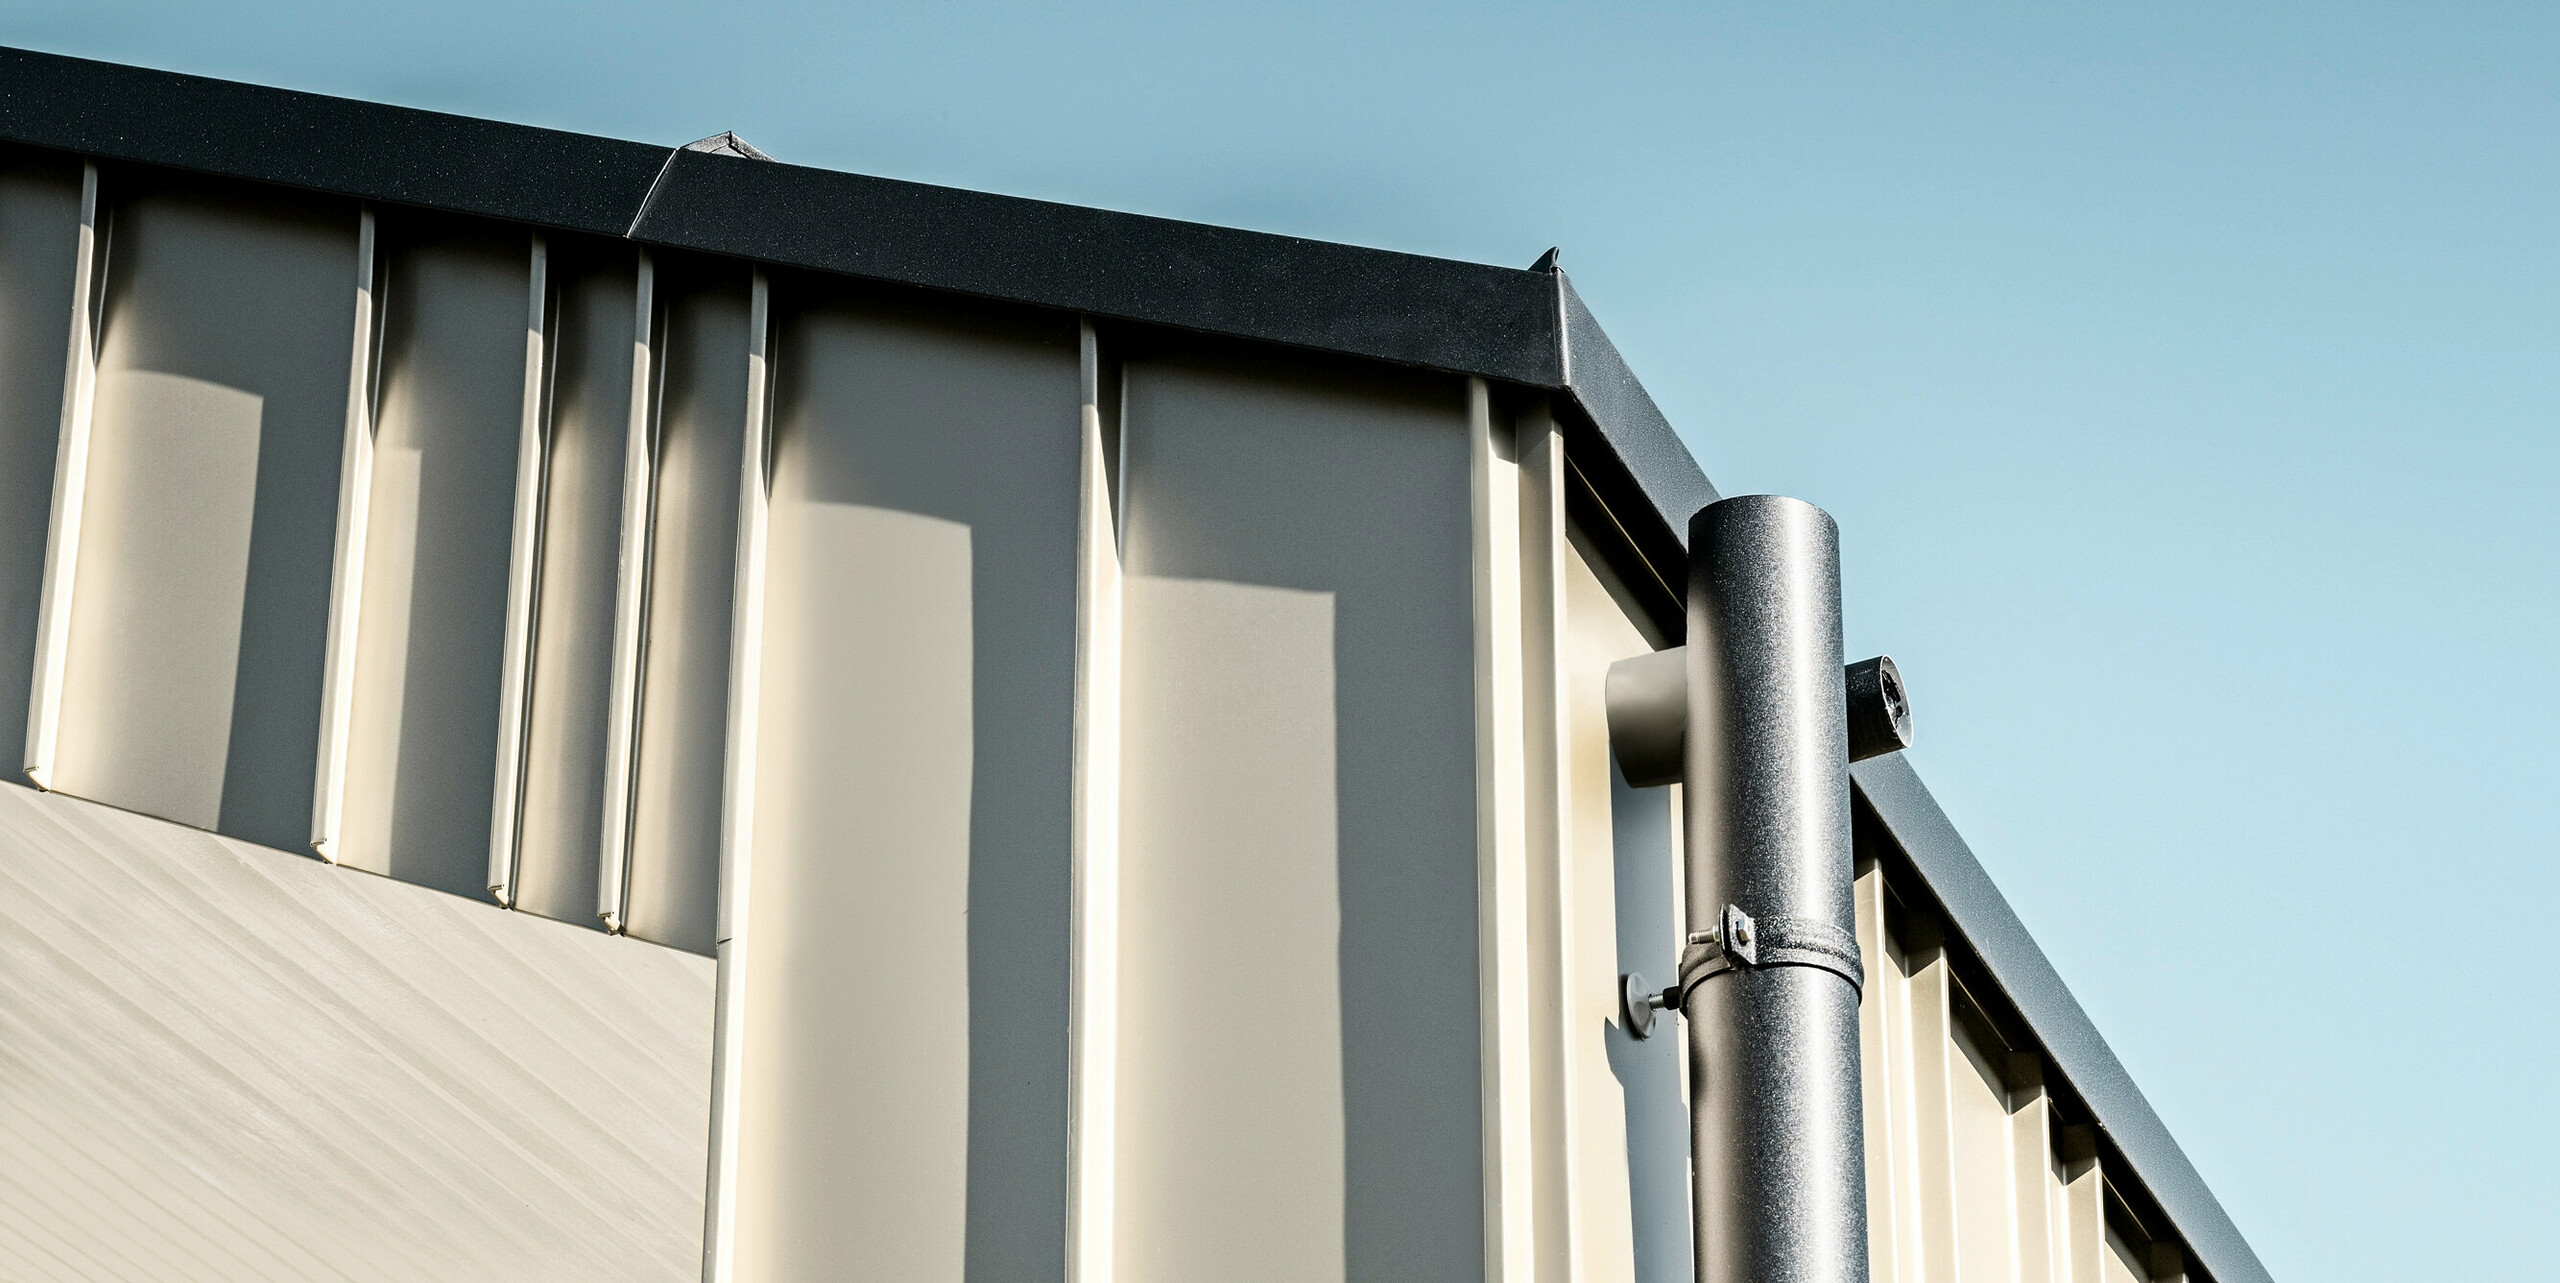 Detailansicht eines robusten PREFA Dachentwässerungssystems aus Aluminium. Das anthrazitfarbene Ablaufrohr bietet eine langlebige und wartungsarme Lösung für moderne Architektur. Die präzise Verarbeitung und das elegante Design unterstreichen die Qualität von PREFA Aluminiumprodukten, die sowohl funktional als auch ästhetisch ansprechend sind und zur Wertsteigerung des Objekts beitragen. Angebracht wurde das Dachentwässerungssystem auf einem modernen Neubau in Bad Münstereifel. Das Einfamilienhaus verfügt über eine elegante Fassade aus FALZONAL in der Farbe Lichtbronze. 